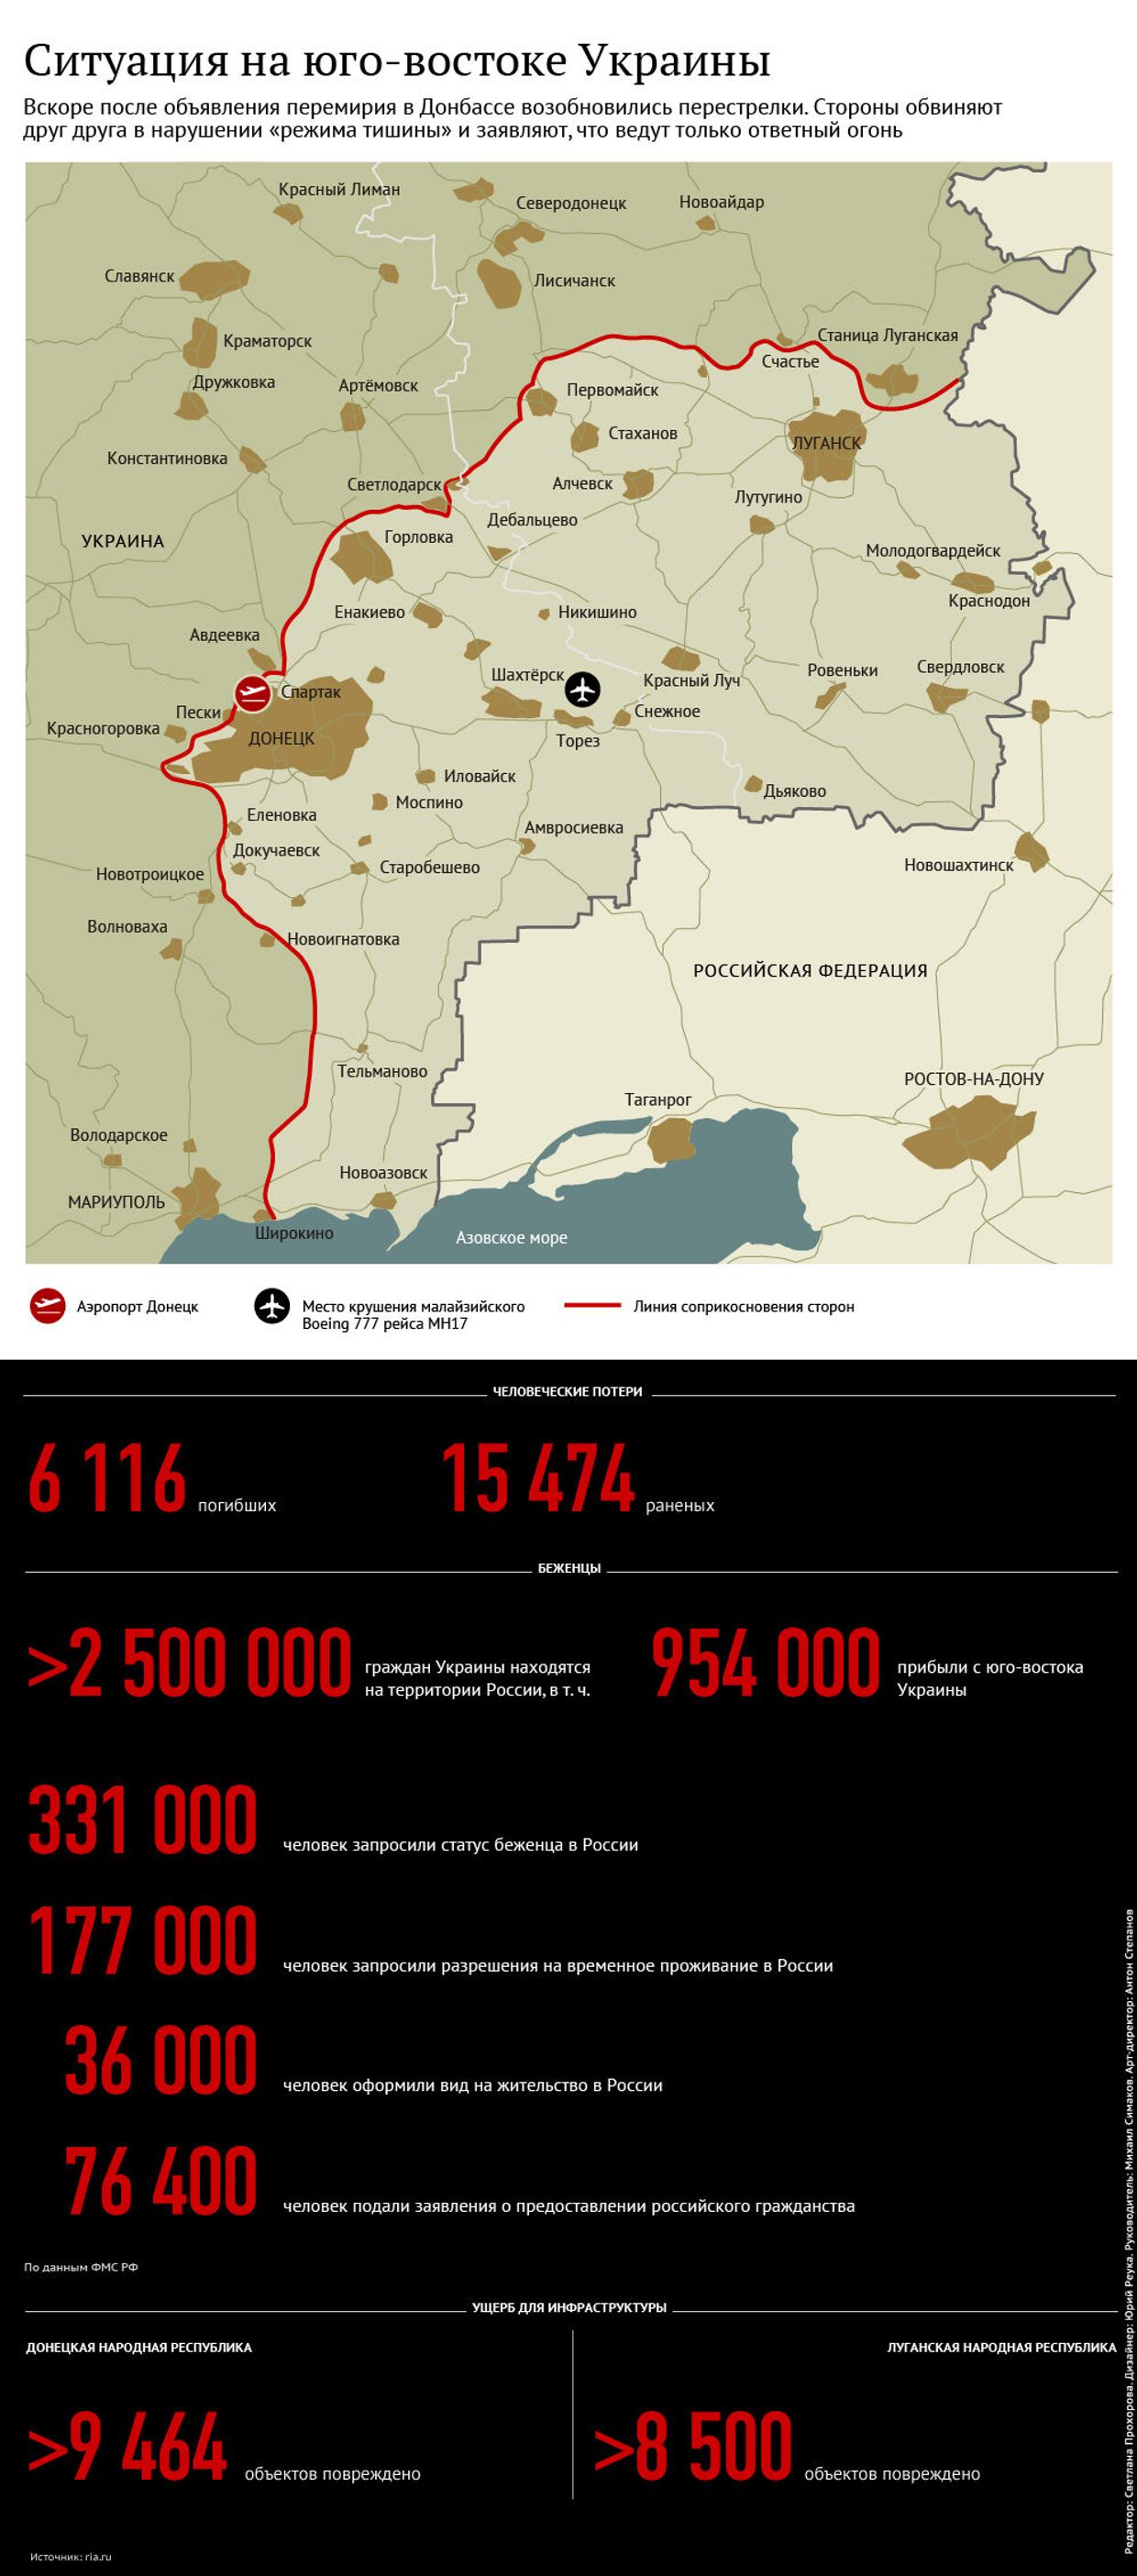 Ситуация на юго-востоке Украины, апрель 2015 года